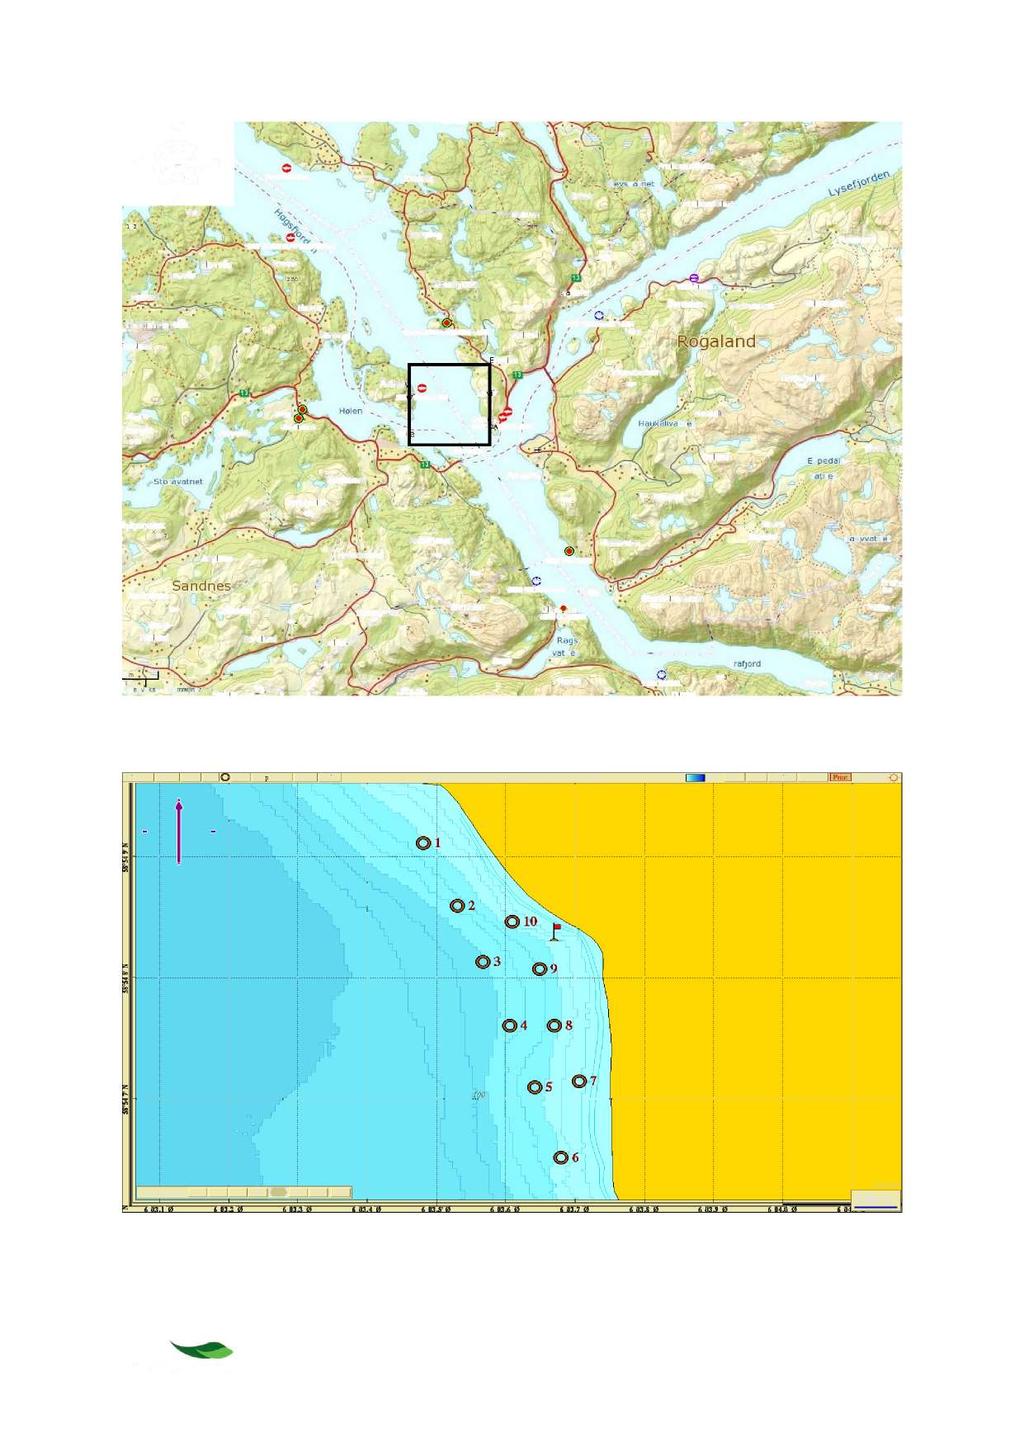 Figur 2-1 Oversiktskart over deler av Høgsfjorden, Lysefjorden samt Frafjord Rogaland. Firkant viser undersøkelsesområdet ved Høgås i Høgsfjorden.